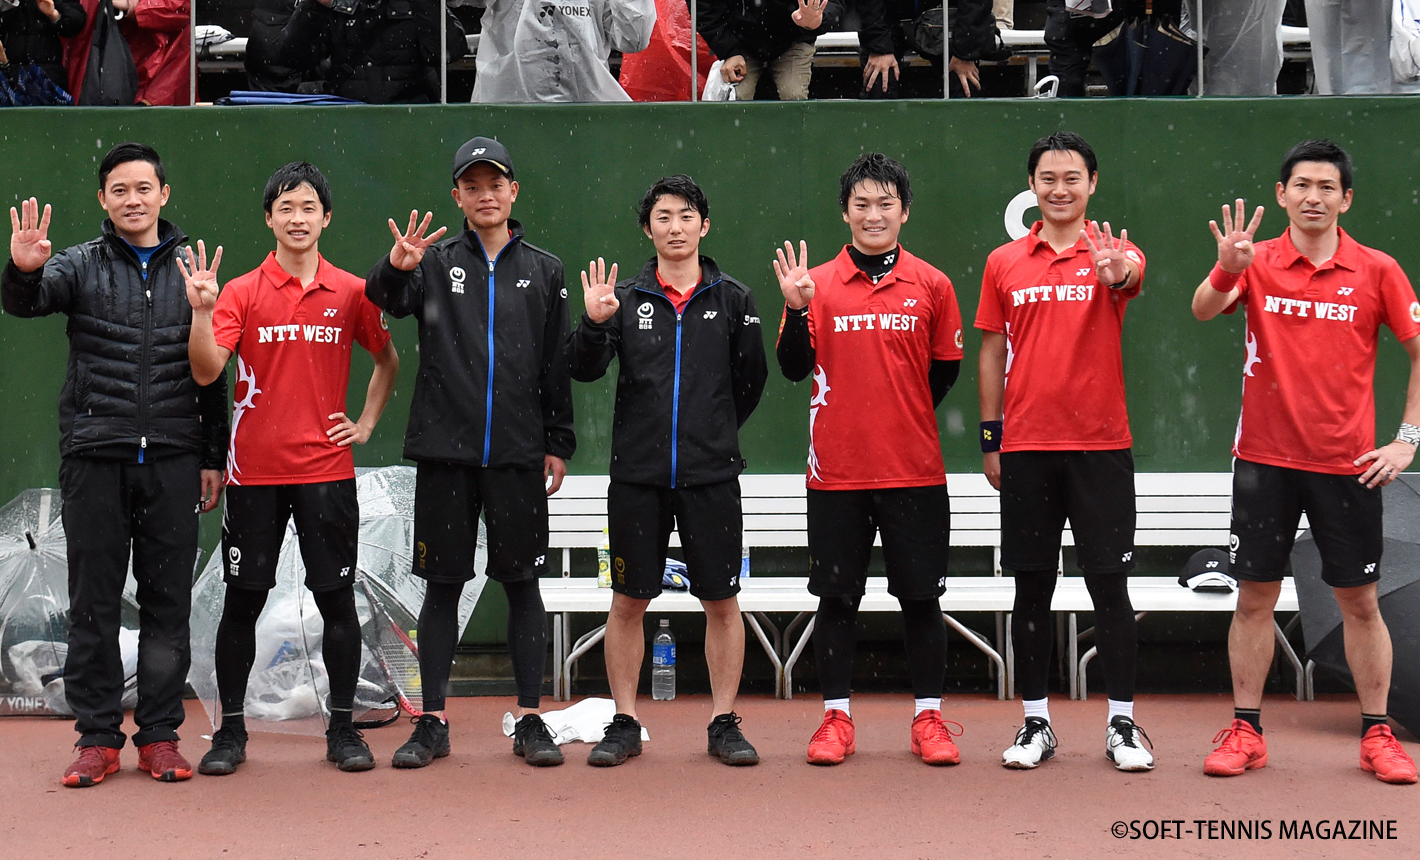 アジアカップひろしま 男子はntt西日本が4連覇 女子はヨネックス連覇 ソフトテニスマガジン ポータル